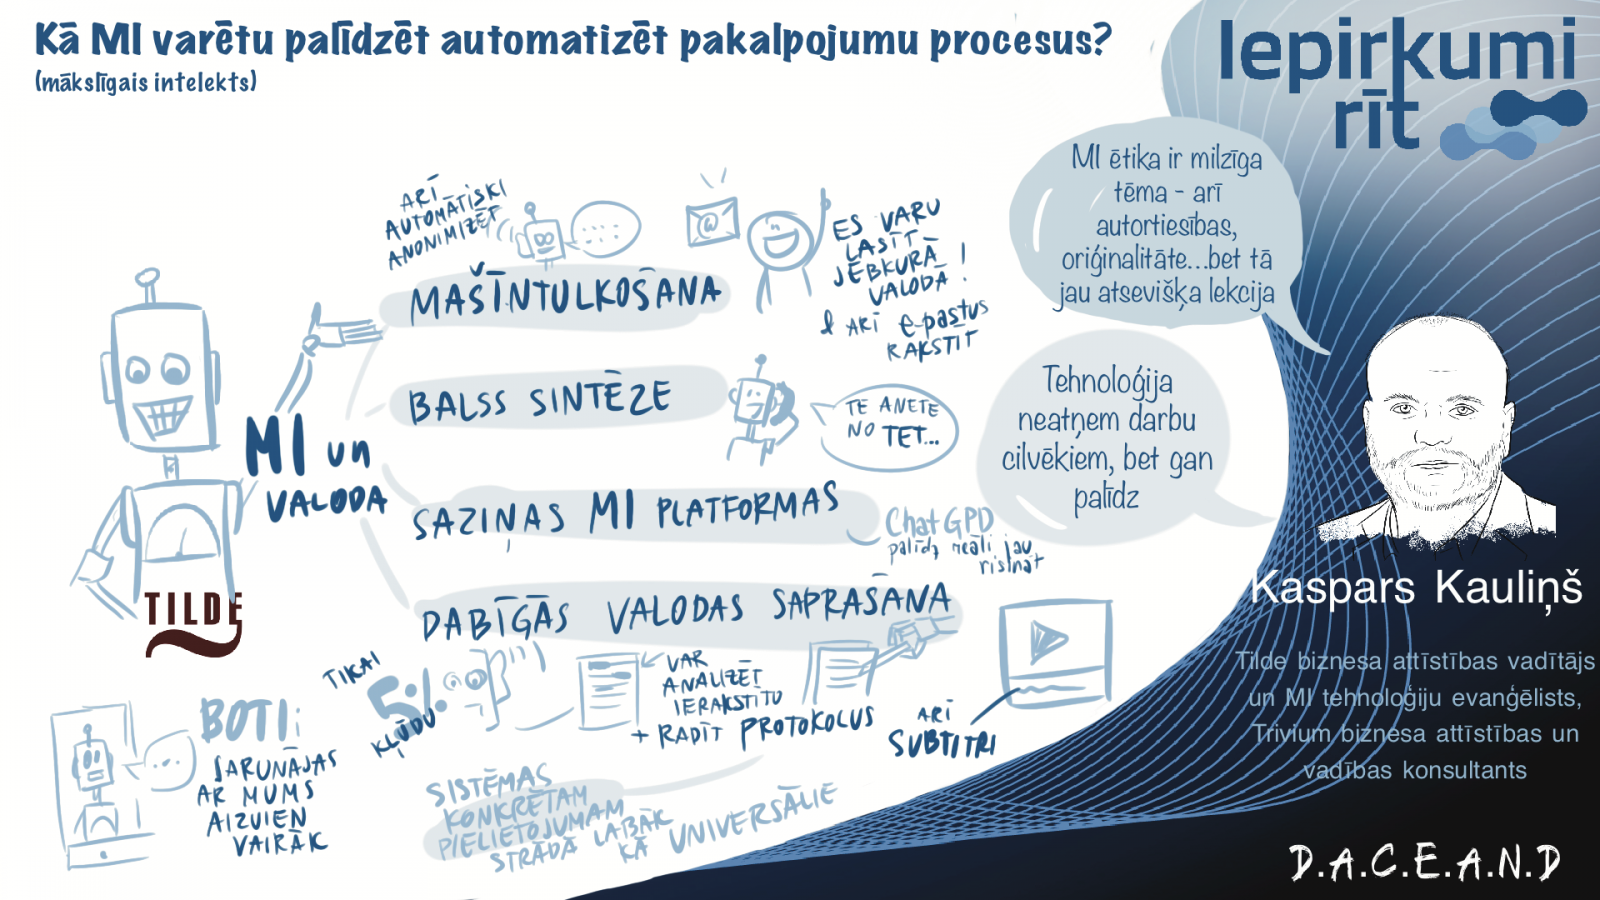 Kaspars Kauliņš - Kā mākslīgais intelekts varētu palīdzēt automatizēt pakalpojumu procesus?